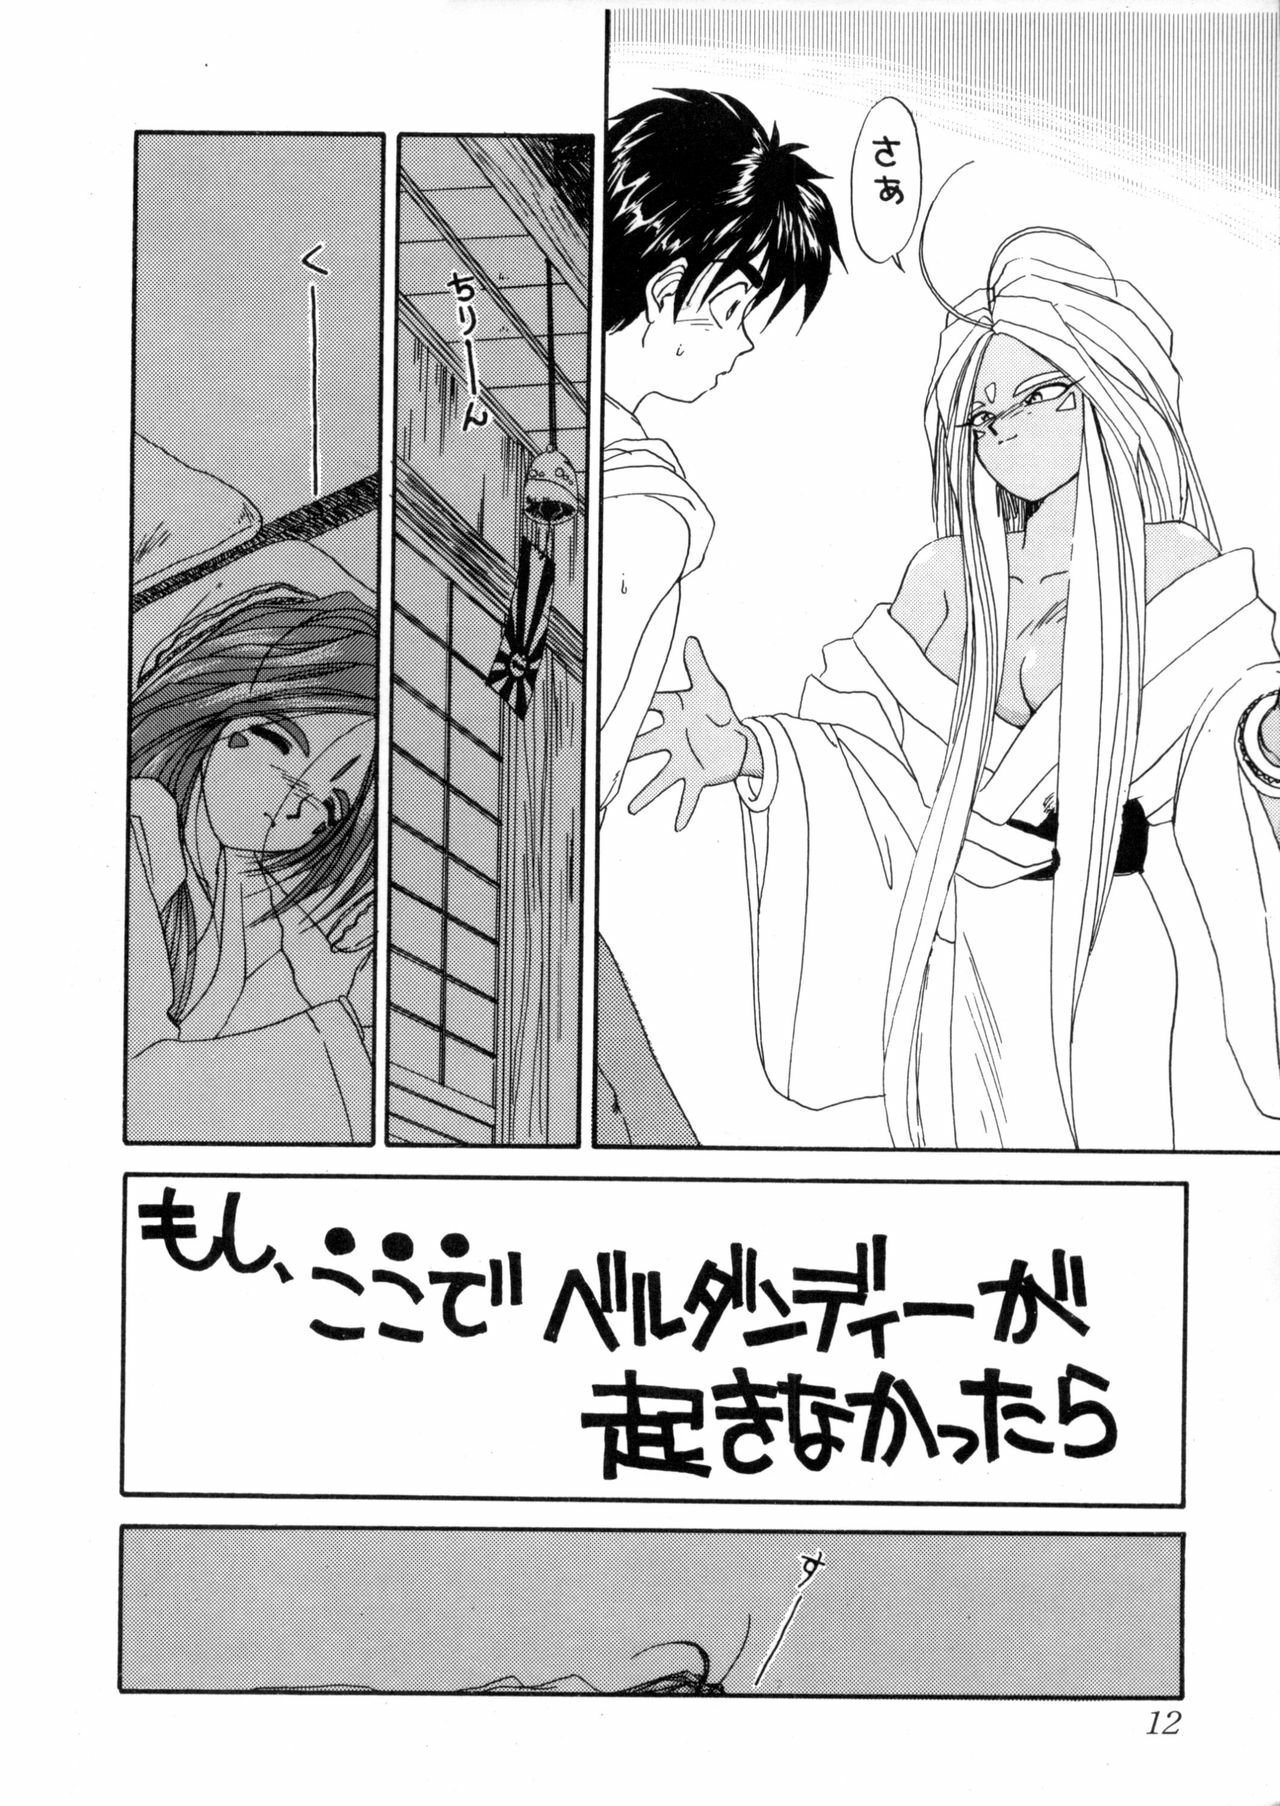 (C44) [Tenchuugumi (Tenbatsu Otoko, Tenchuunan)] IF 5 (Oh my goddess!) page 12 full